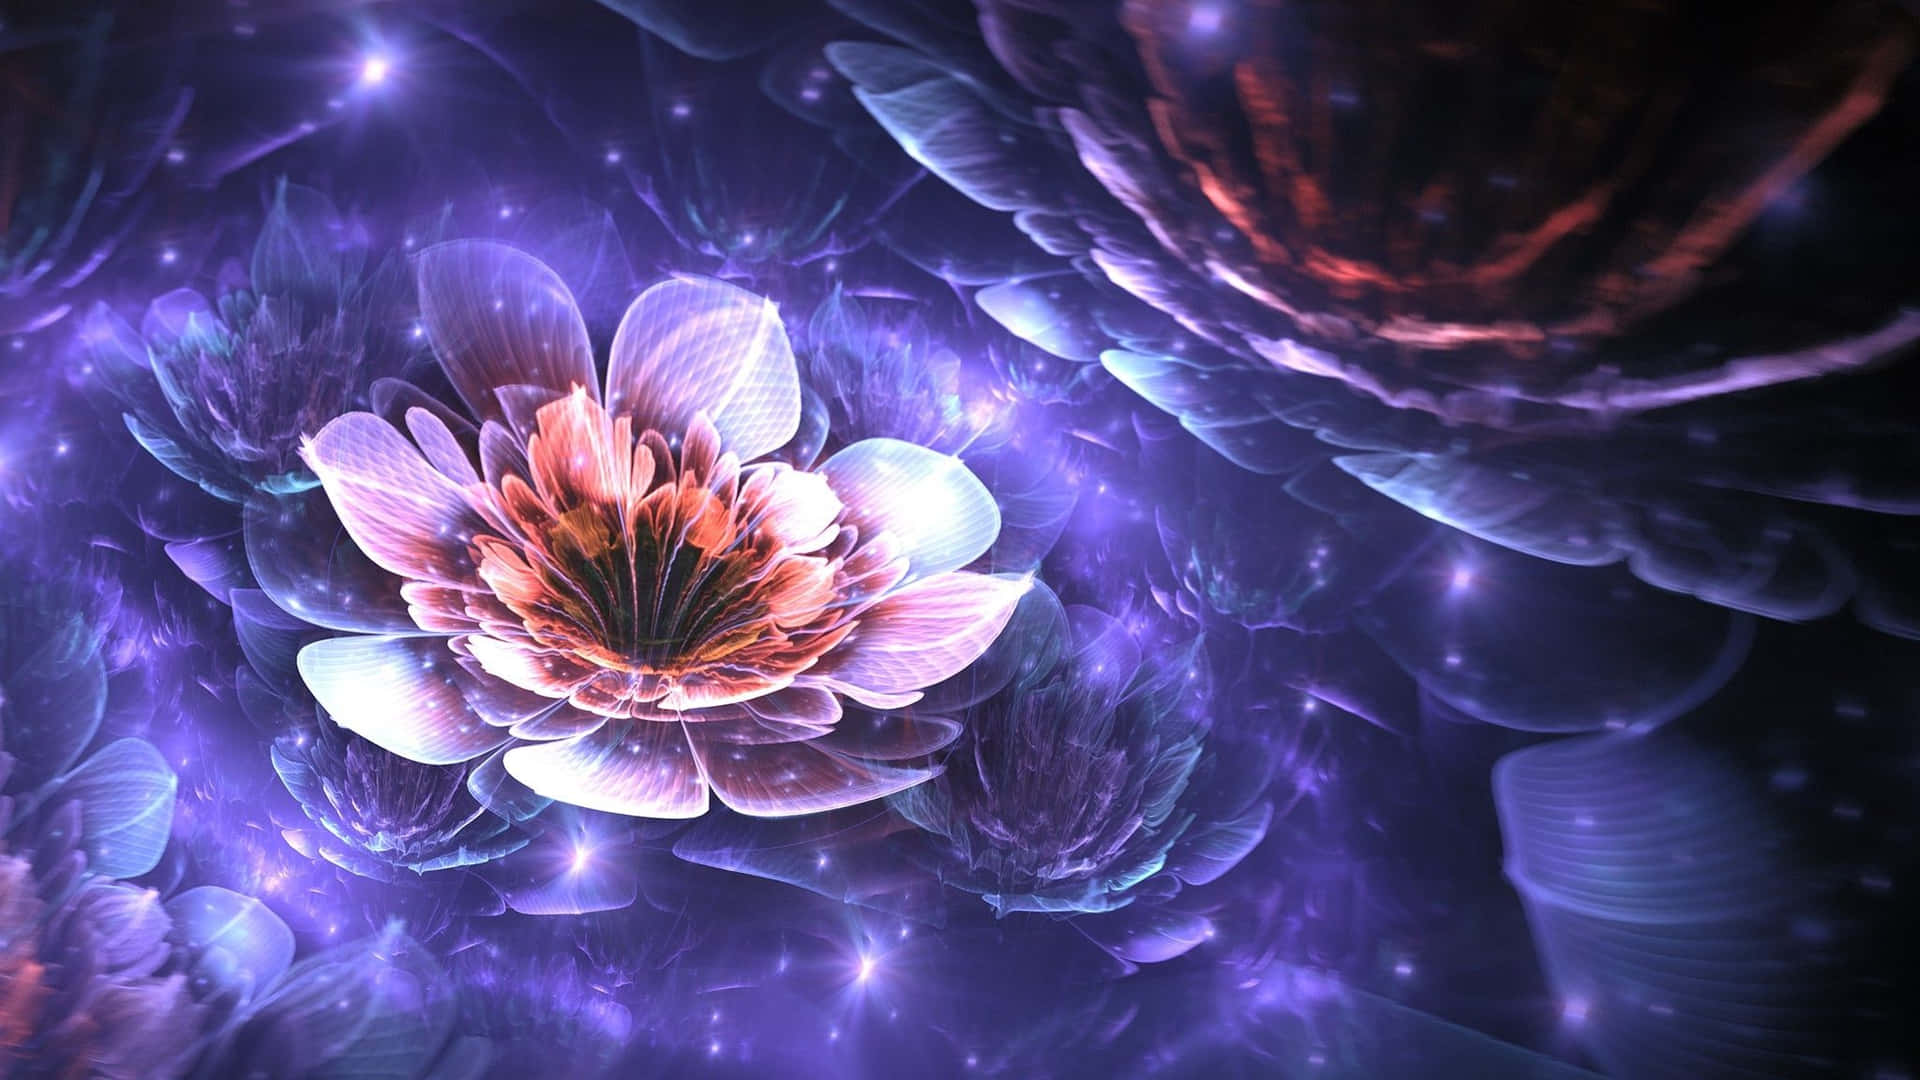 Stunning 3D Flower Art in Vibrant Colors Wallpaper